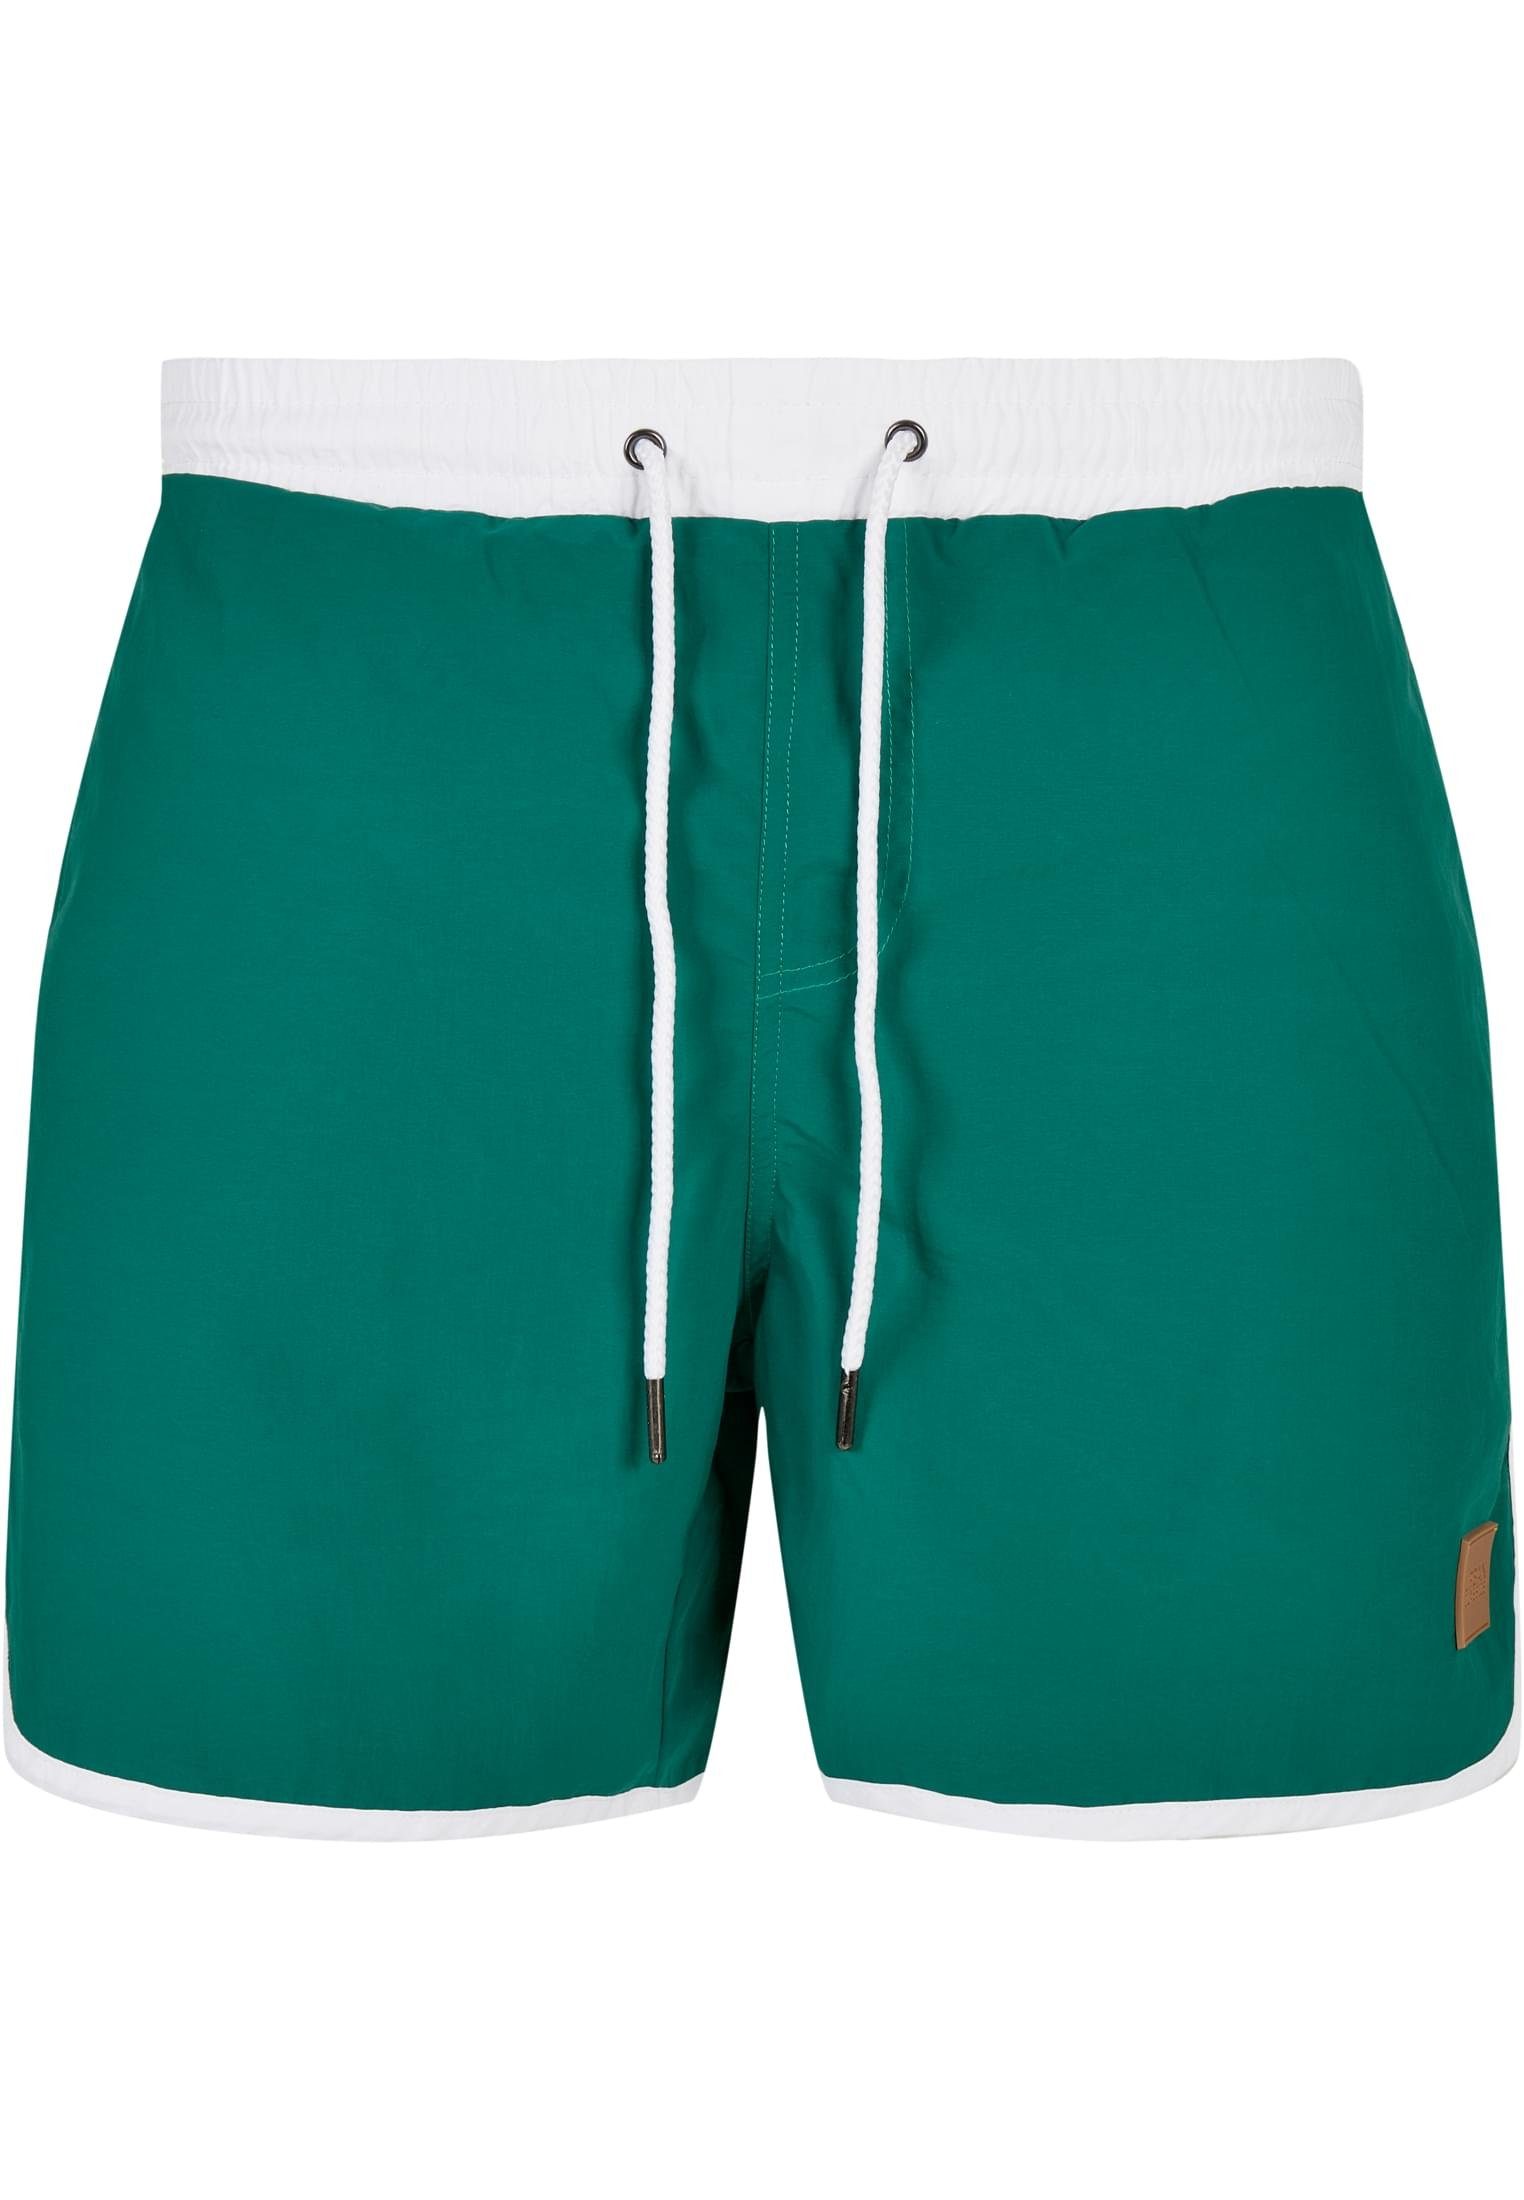 URBAN CLASSICS Badeshorts Herren Retro Swimshorts white/green